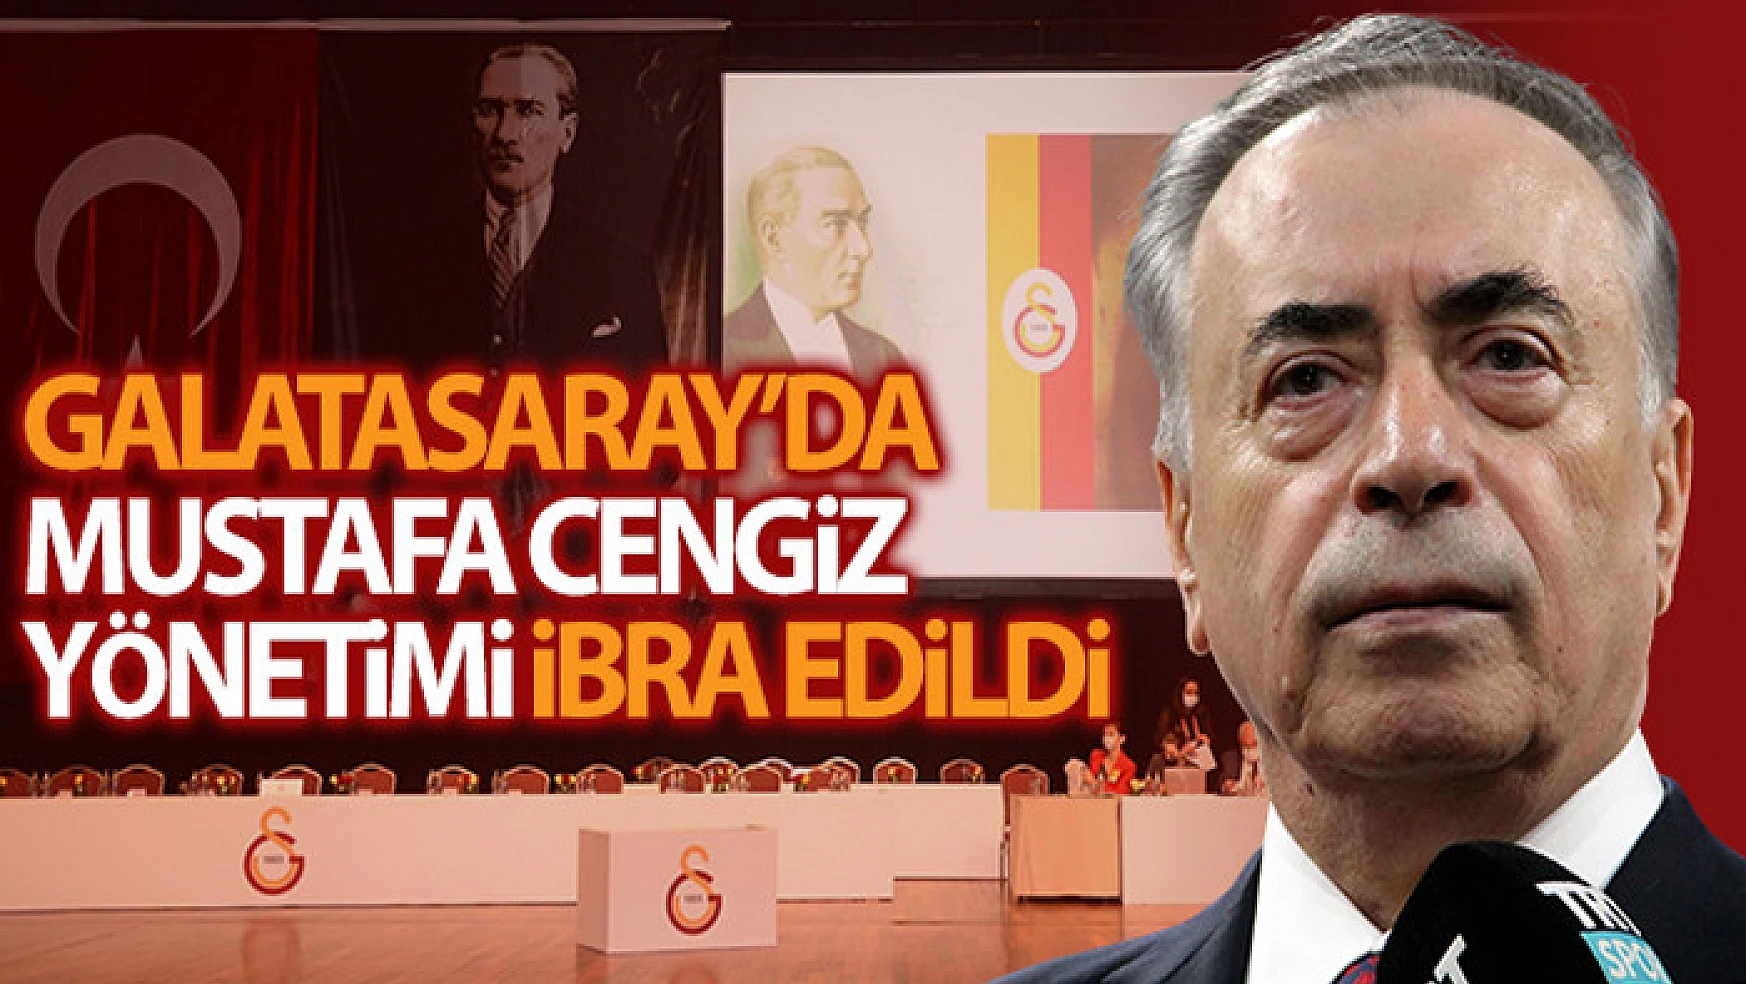 Mustafa Cengiz başkanlığındaki yönetim mali ve idari olarak edildi